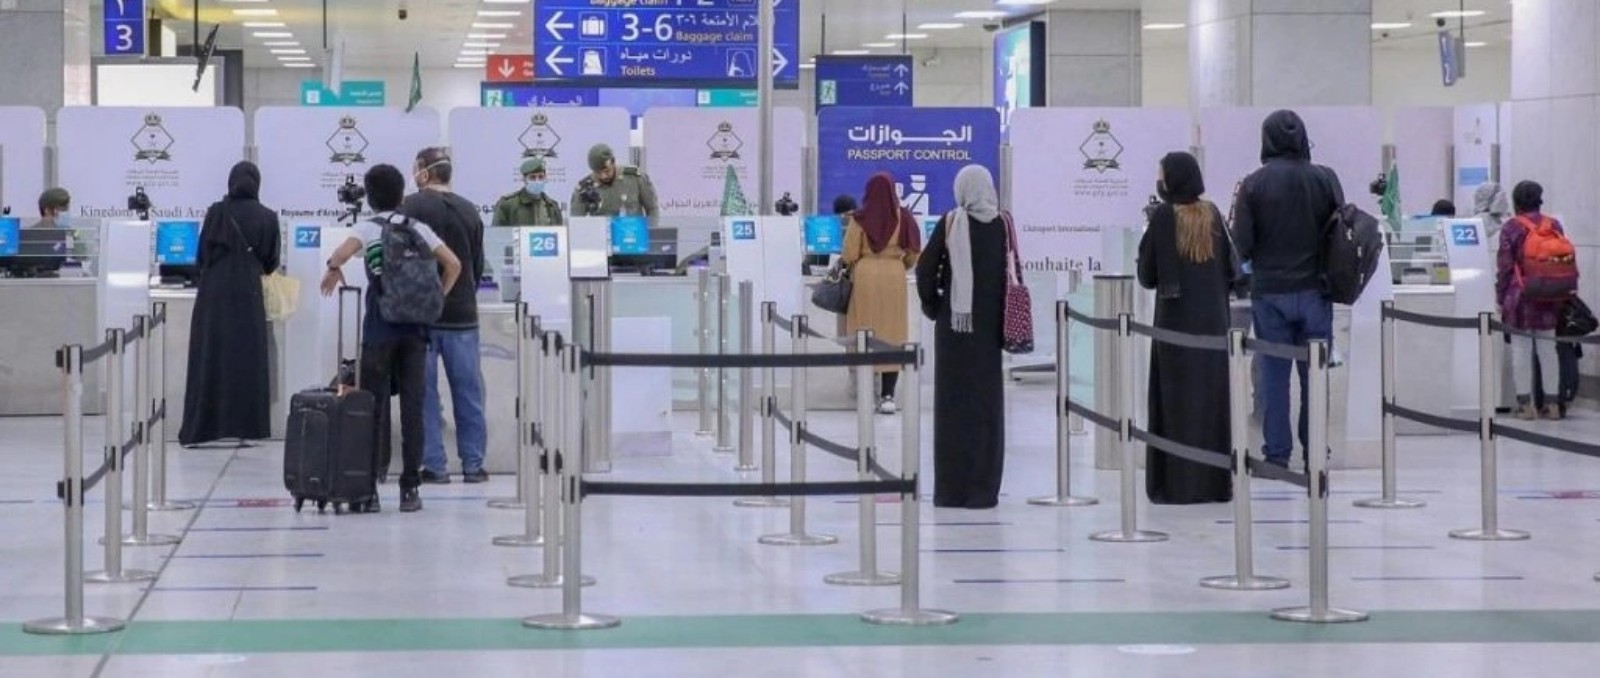 وزير النقل: رضى المسافرين عن خدمات المطارات بالمغرب في تحسن